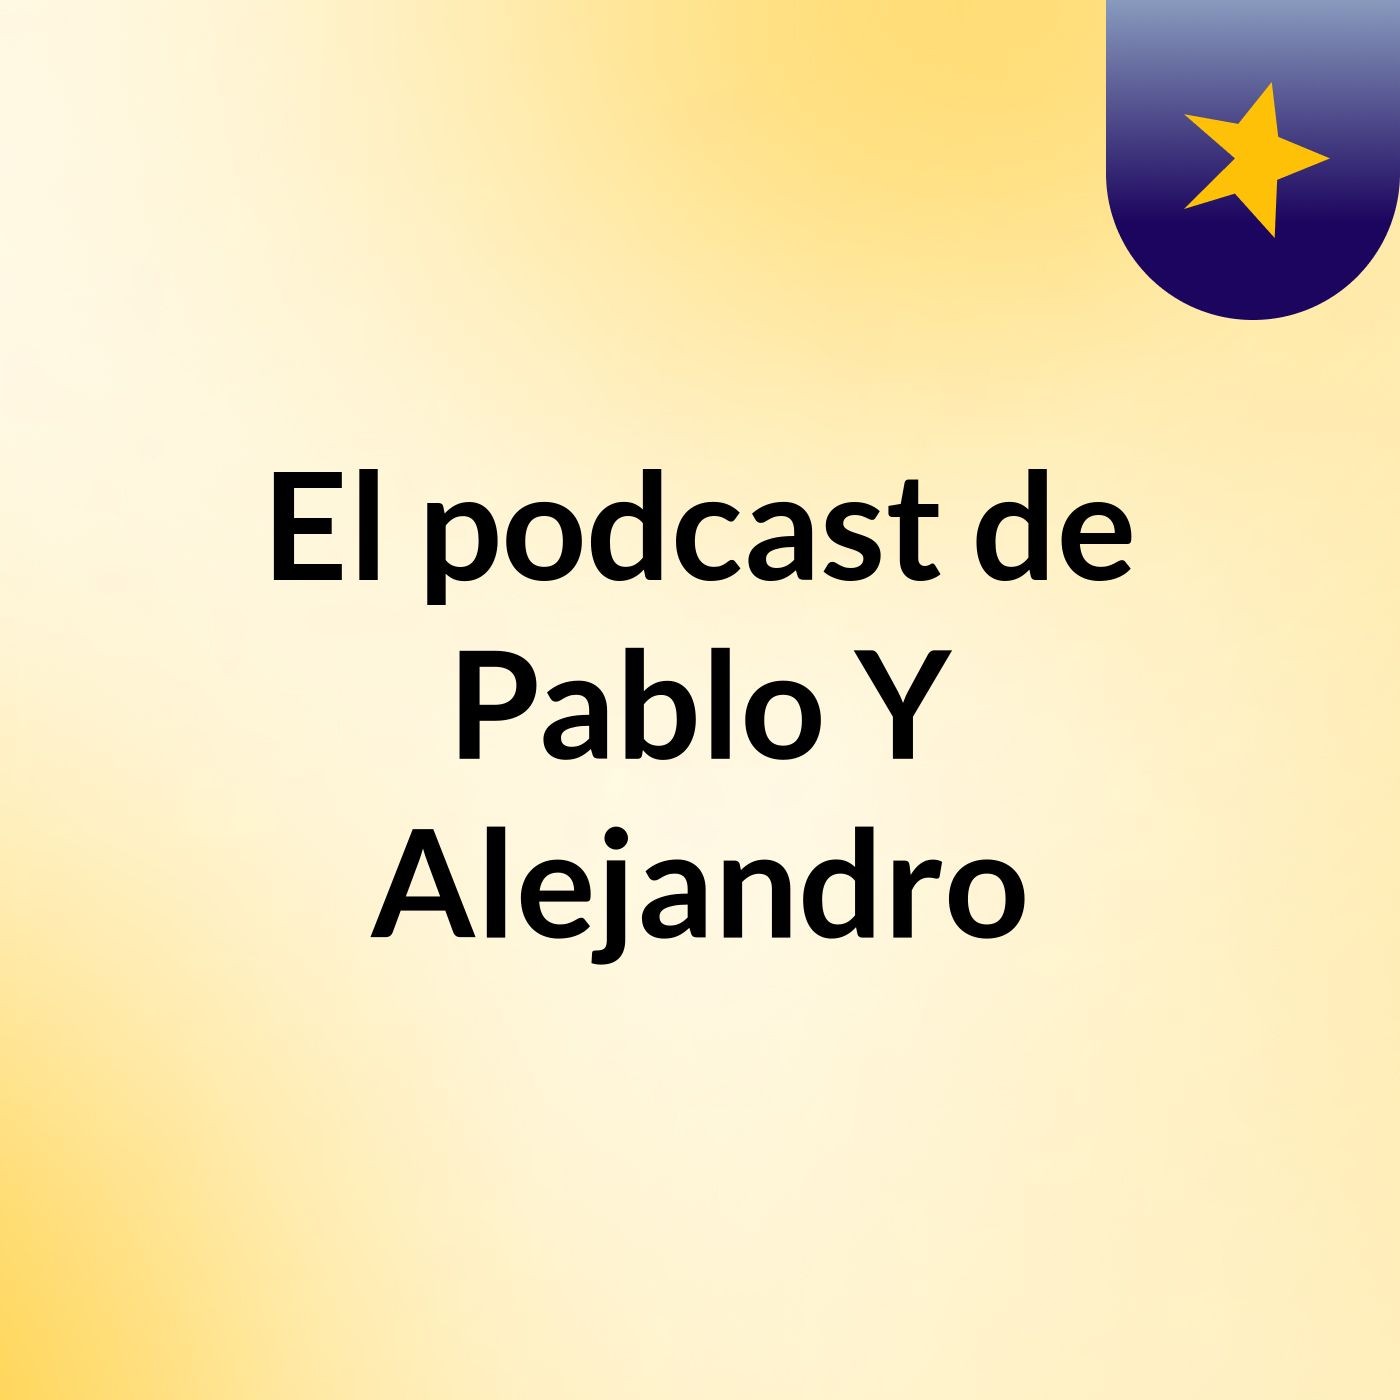 Episodio 3 - El podcast de Pablo Y Alejandro